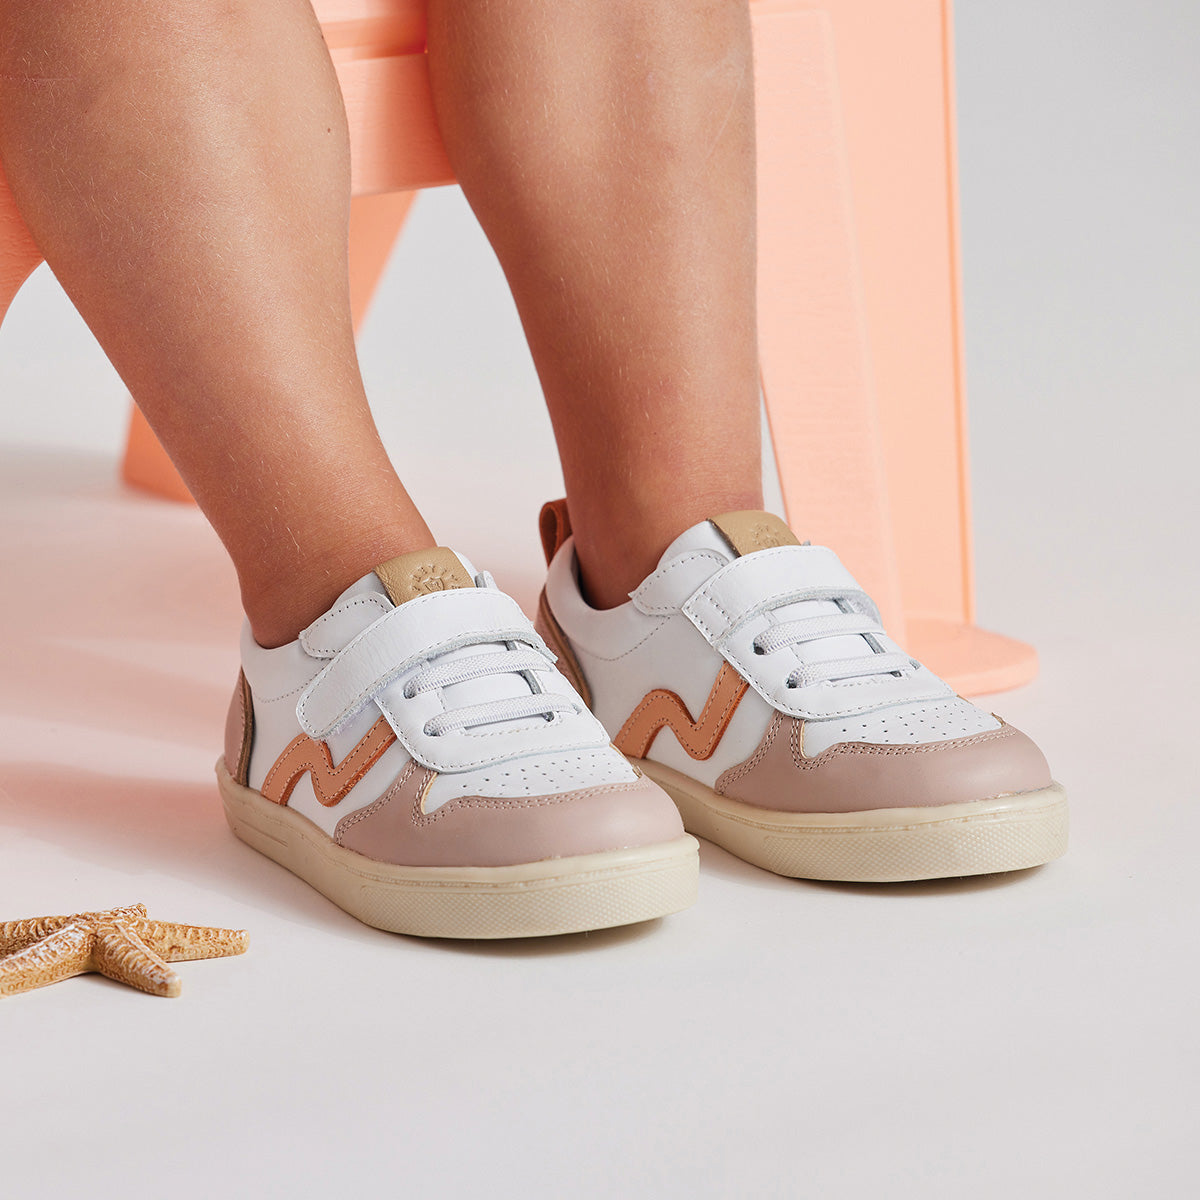 XO Trainer - White/Coral Shoes Pretty Brave 